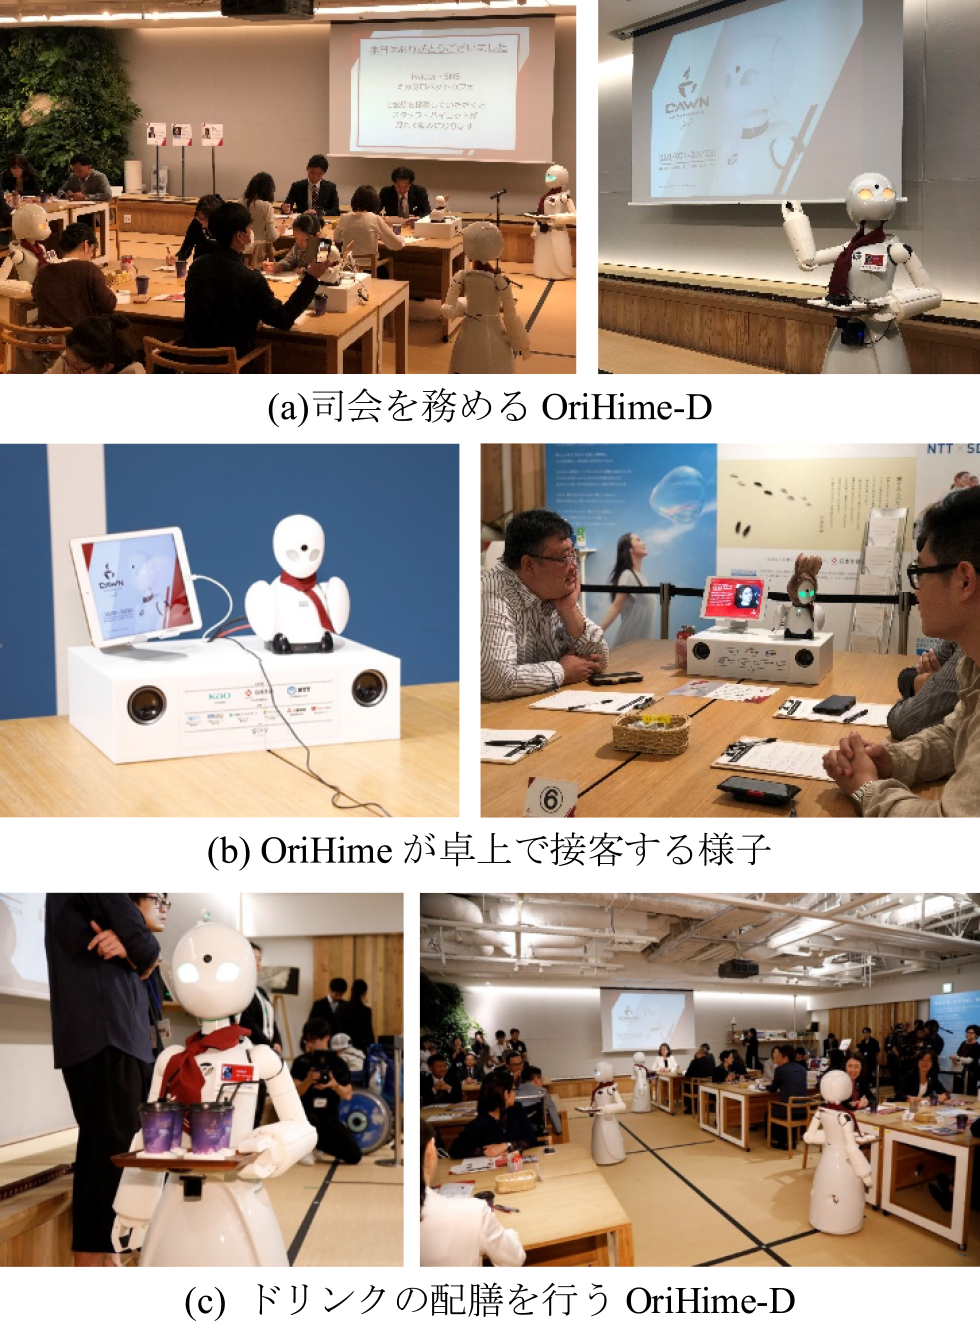 分身ロボットカフェDAWN ver. β 2.0の様子　Avatar Robot Cafe DAWN ver.β 2.0.